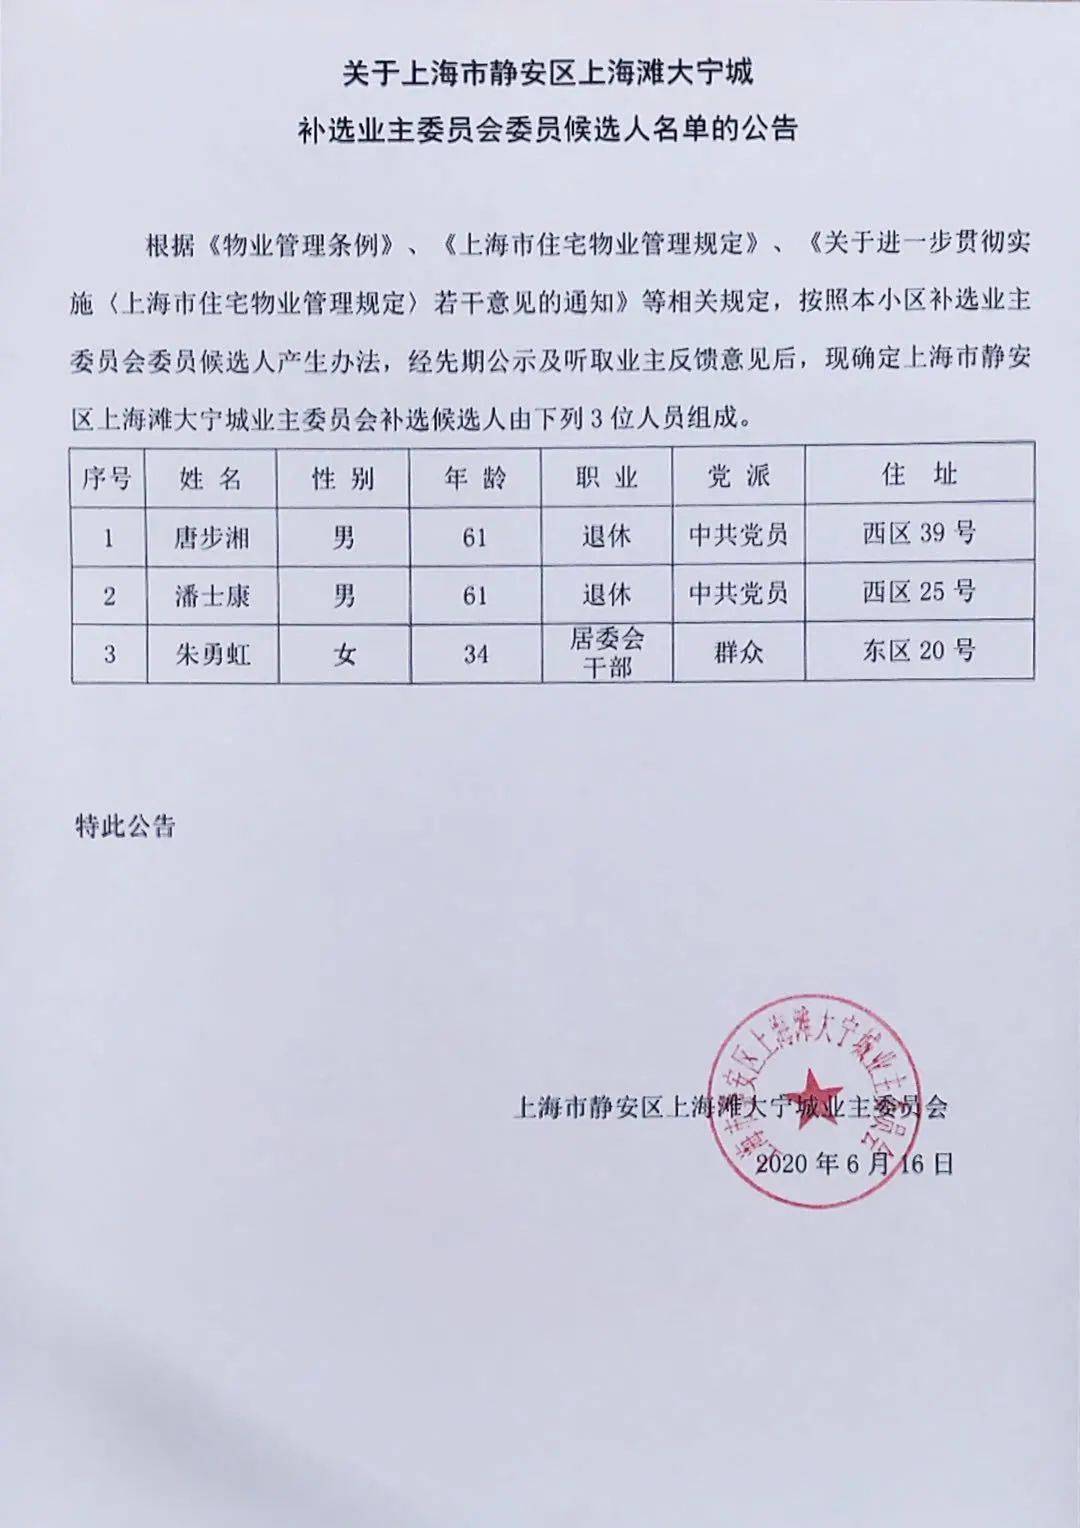 关于上海市静安区上海滩大宁城补选业主委员会候选人名单的公告